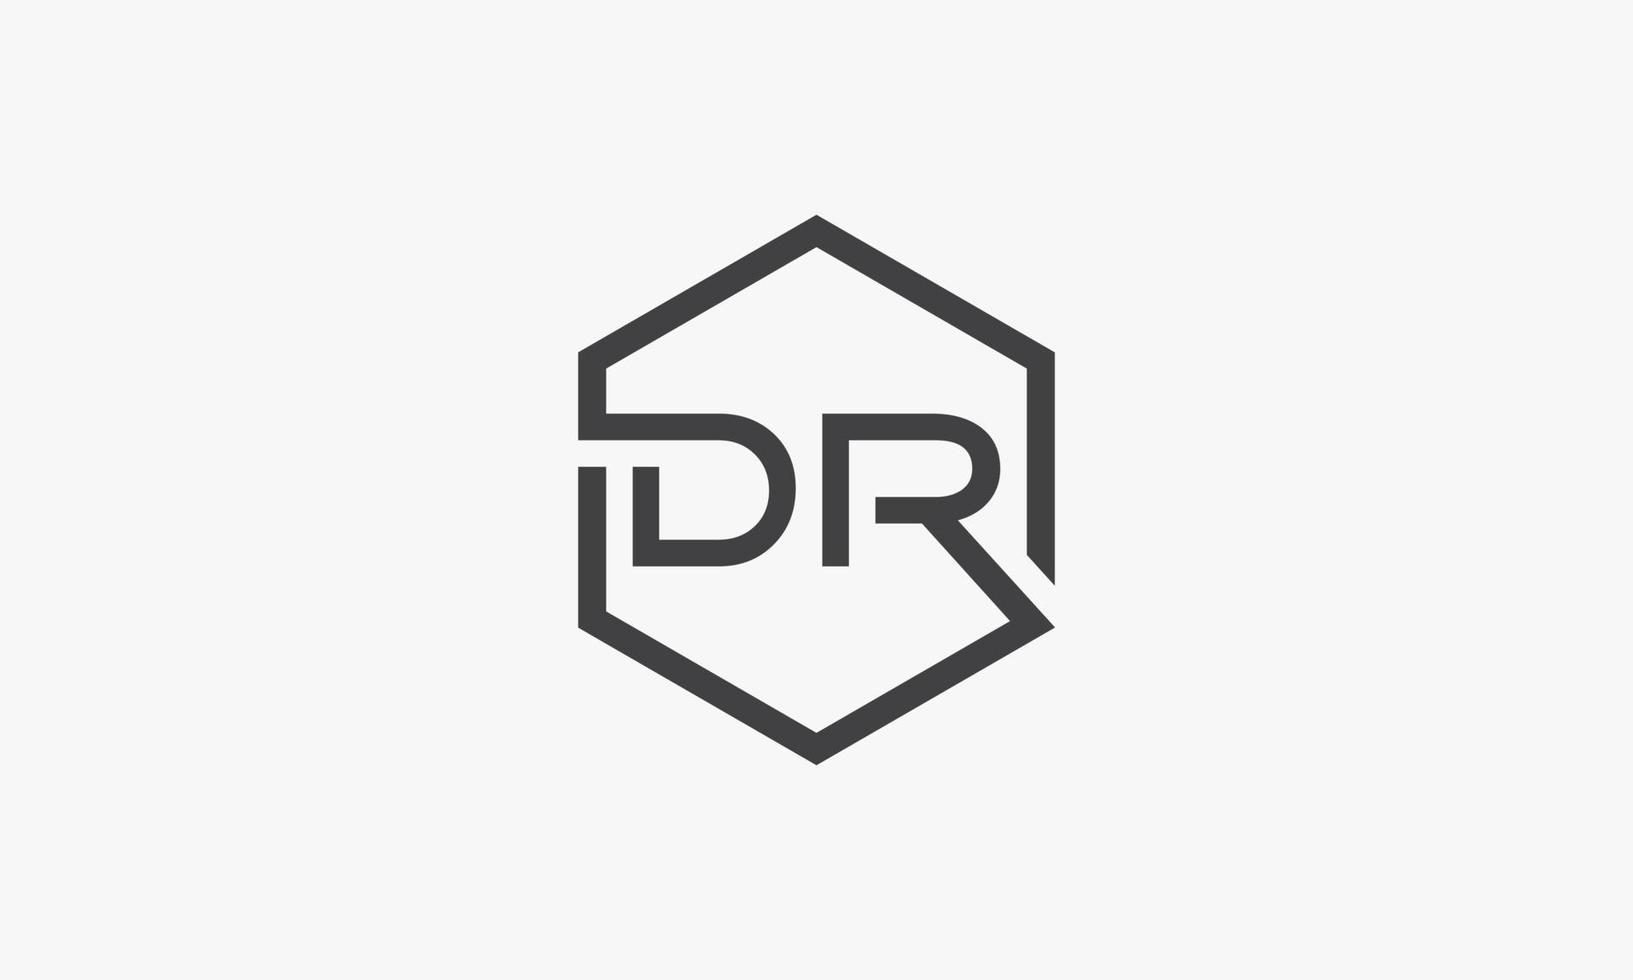 dr brief logo zeshoek concept geïsoleerd op een witte achtergrond. vector